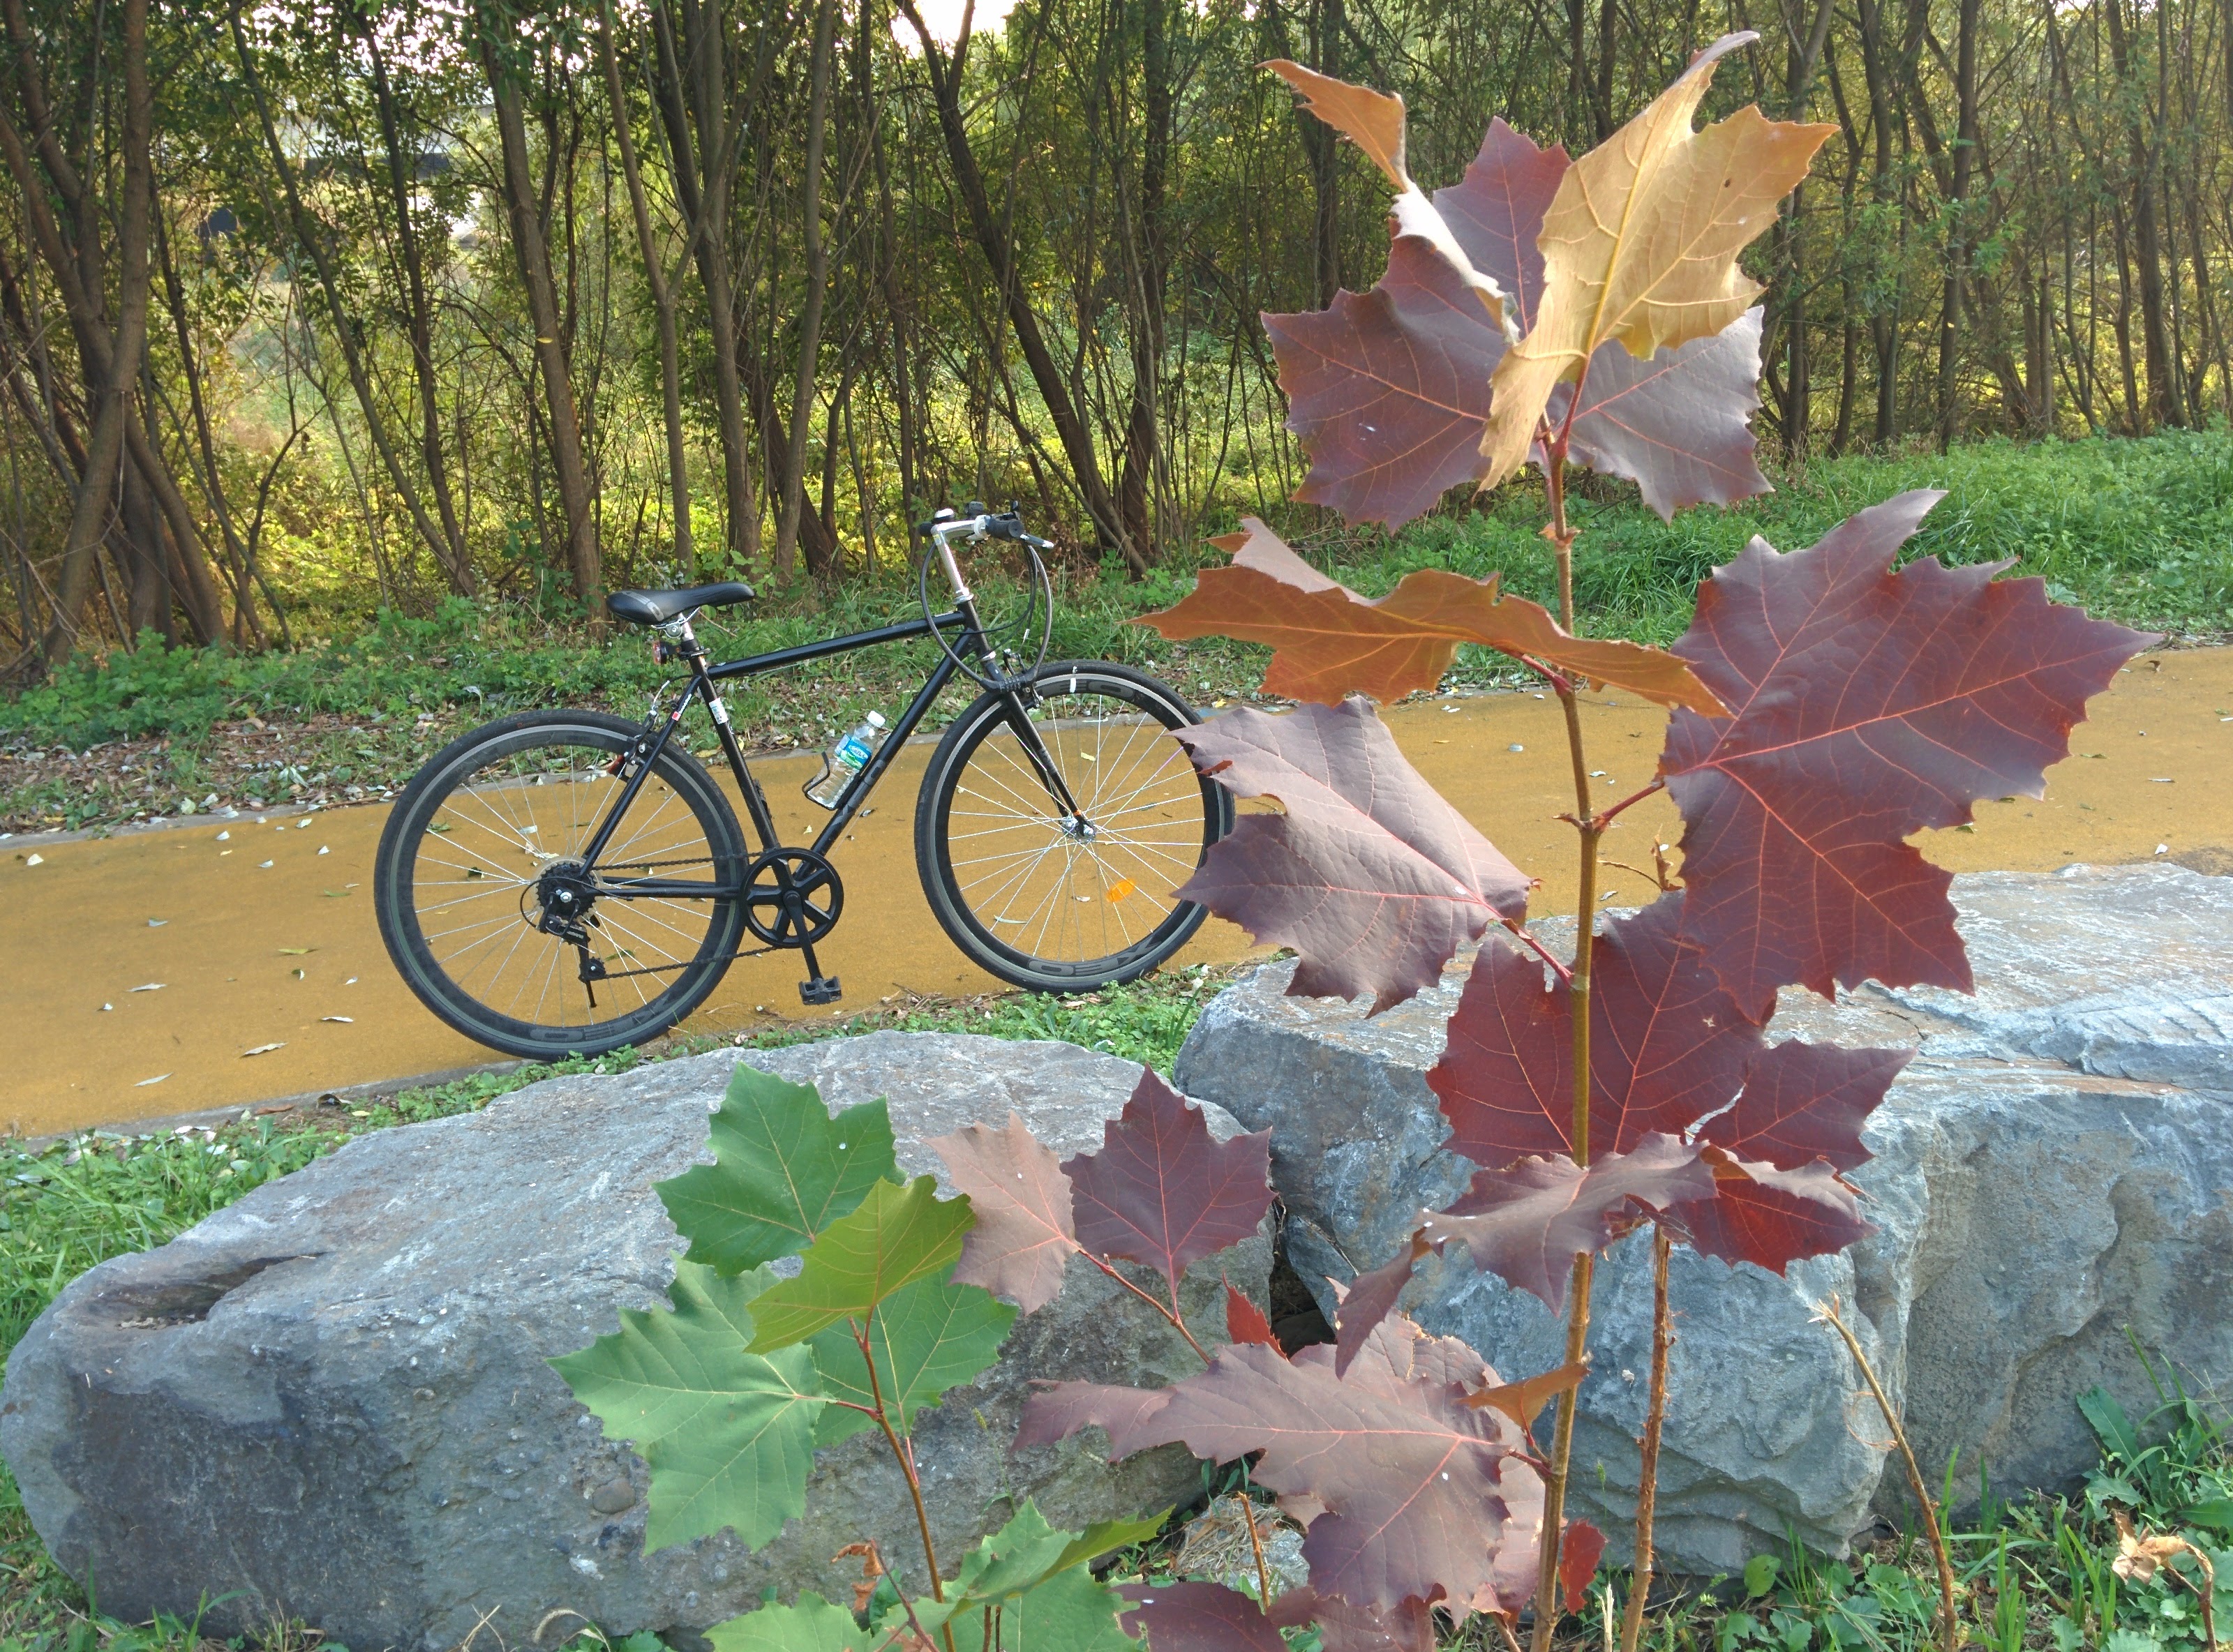 IMG_20151003_164115.jpg 어린 플라타나스 나무와 자전거 (양버즘나무)